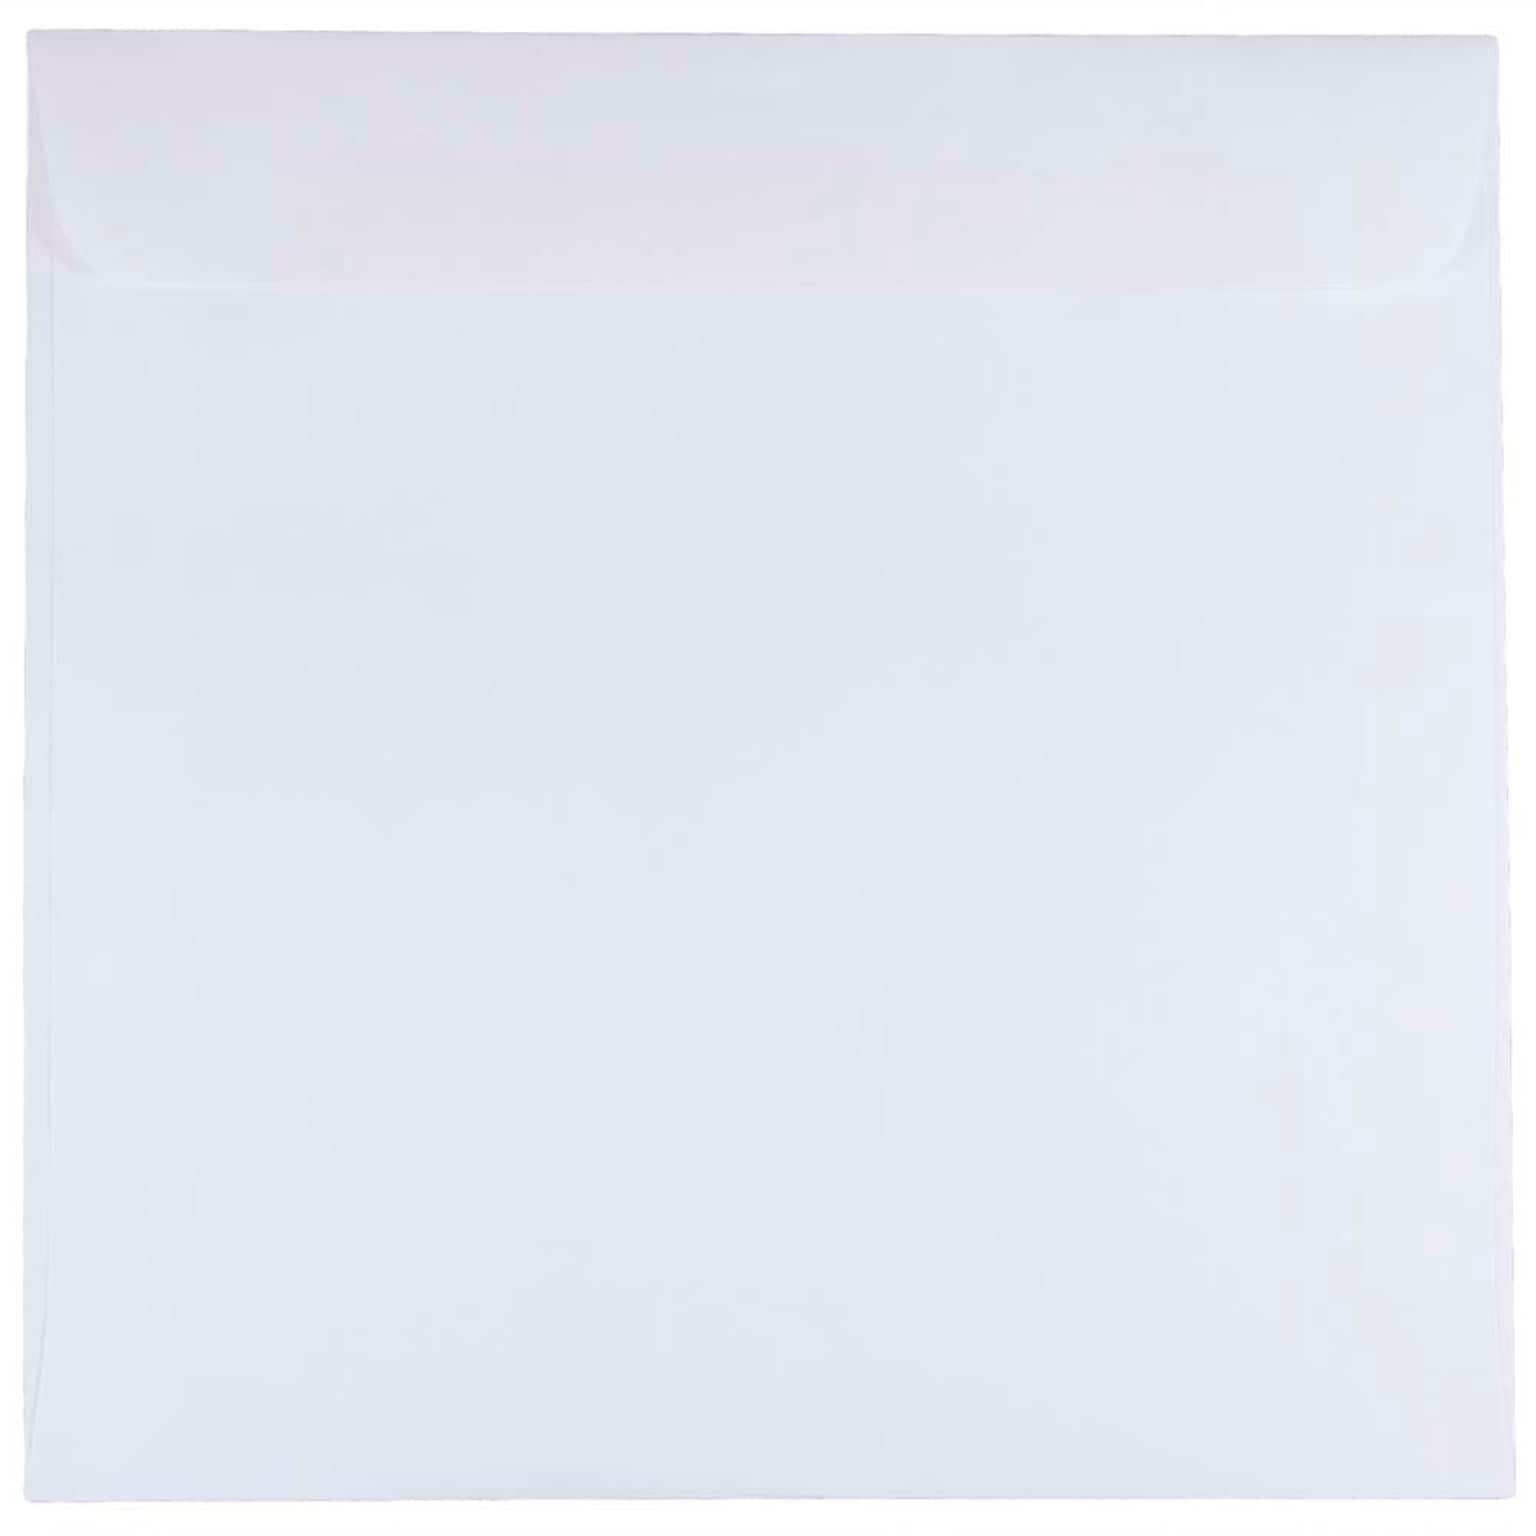 JAM Paper 8.5 x 8.5 Square Invitation Envelopes, White, 25/Pack (4231)